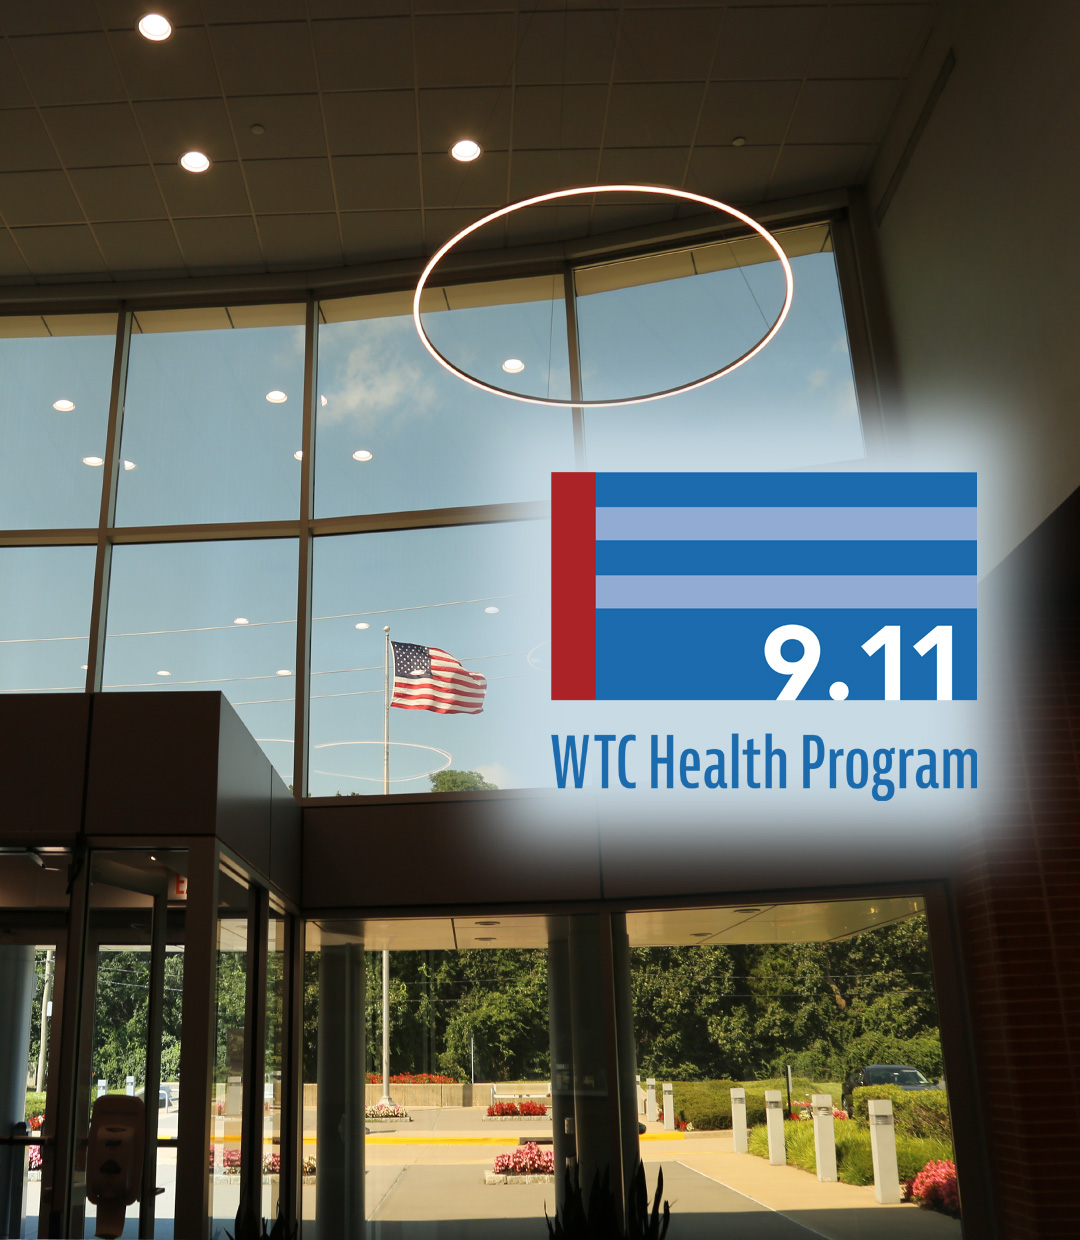 WTC Health Program